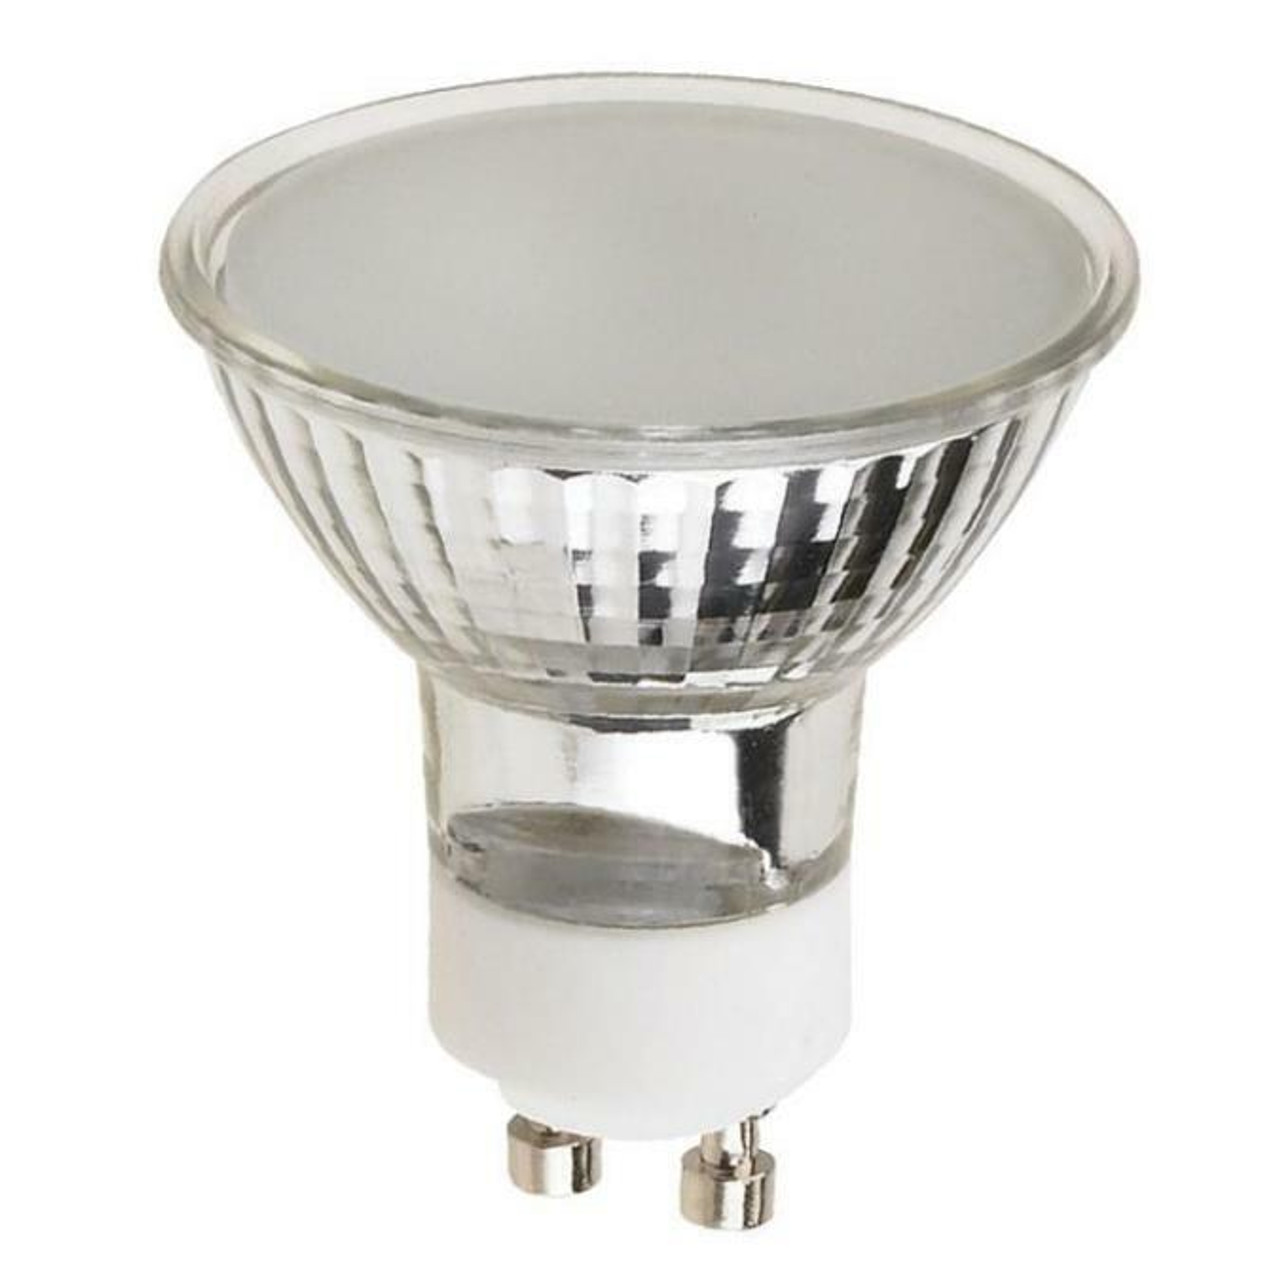 Westinghouse 0352900 50 Watt MR16 Halogen Flood Light Bulb 3050K Frost Lens  GU10 Base, 120V